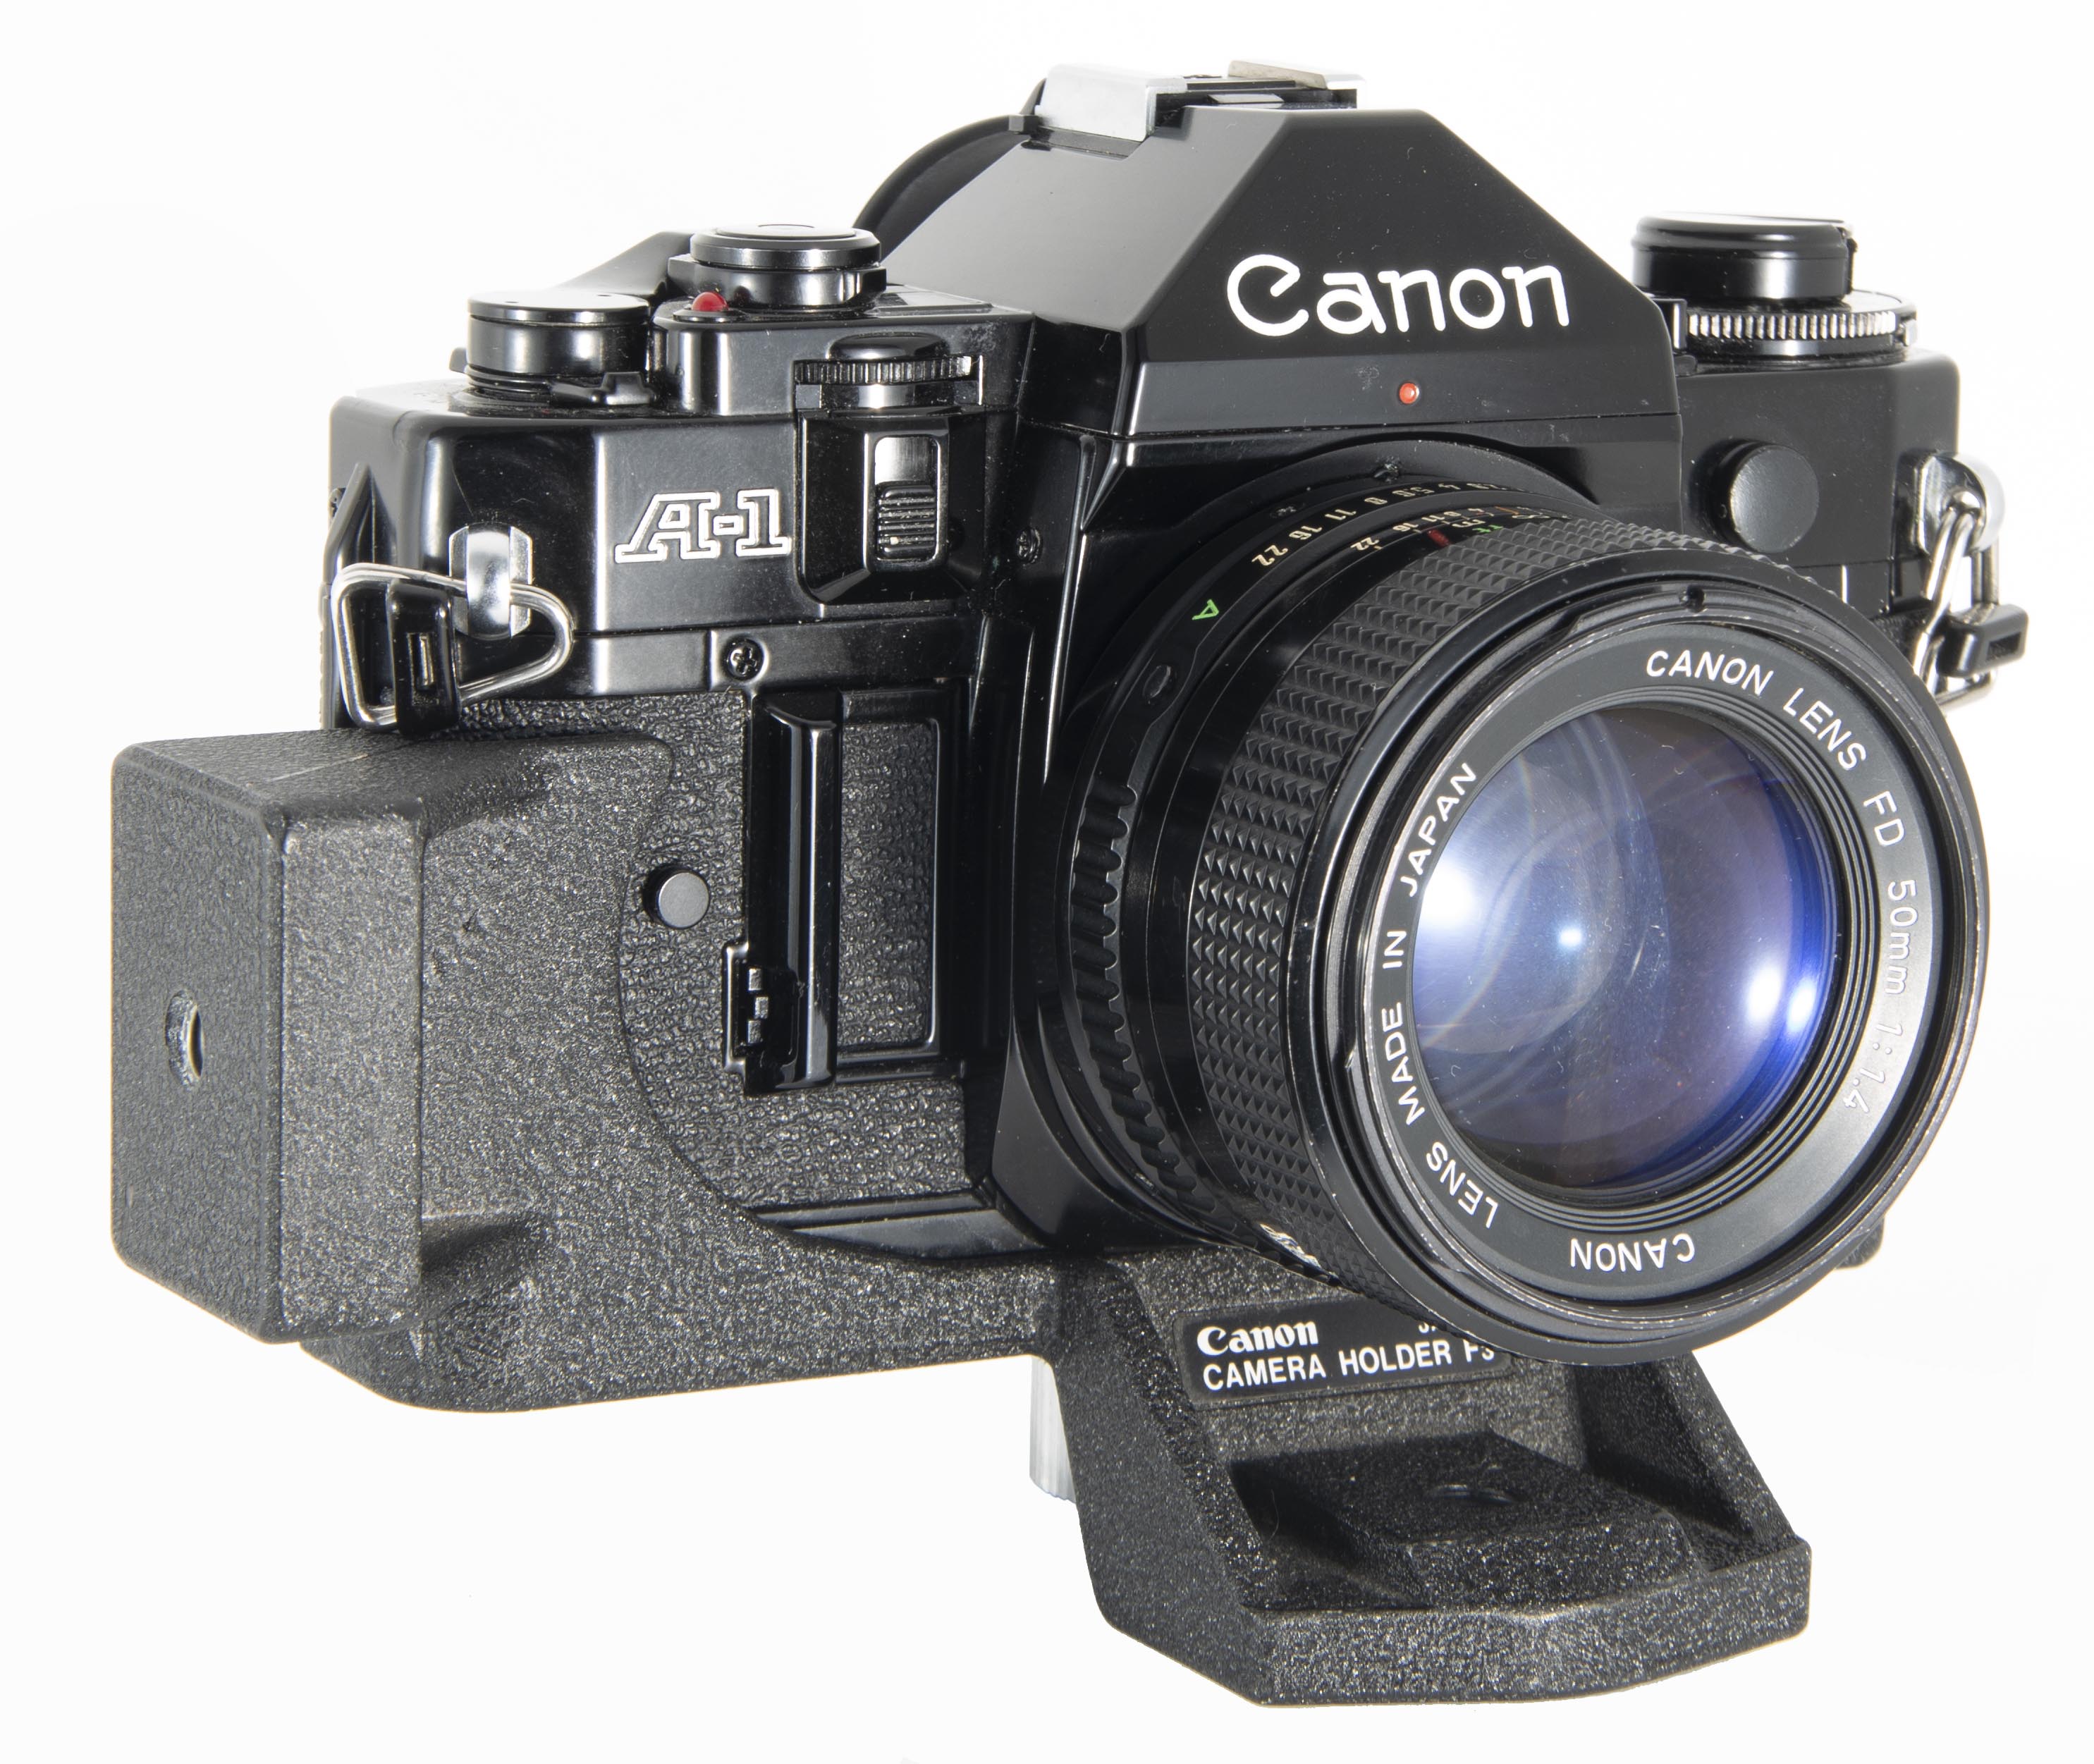 Canon Camera Holder F3